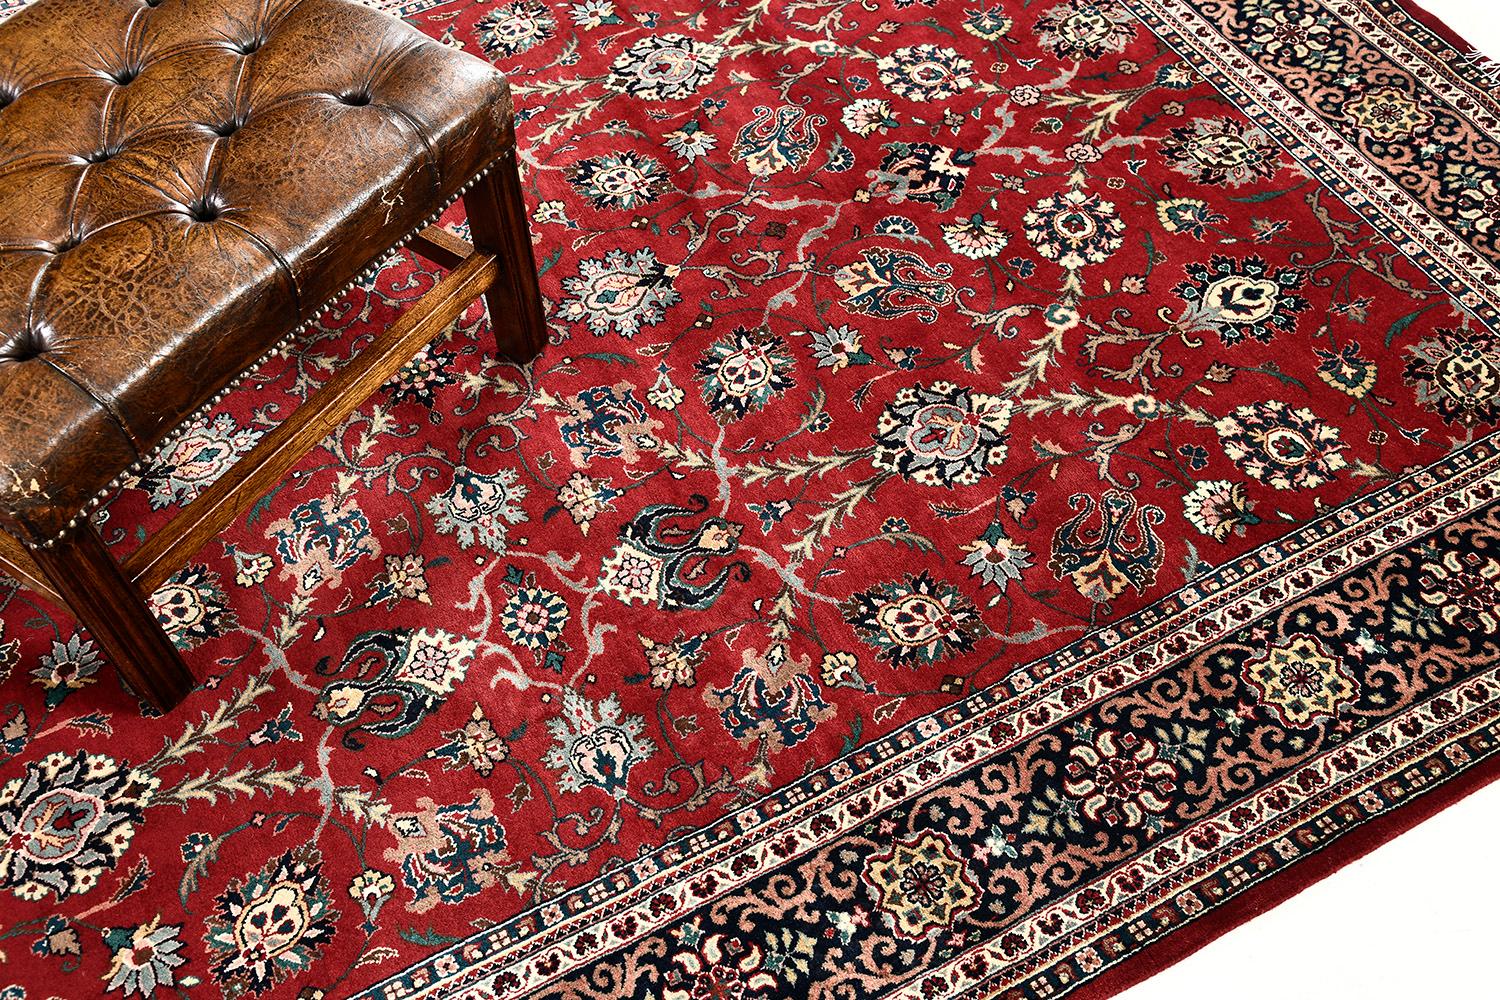 Dieser prächtige Indo-Semnan-Teppich passt besser zu einem majestätischen Thema und weist ein raffiniertes Muster auf. Dieses Meisterwerk ist so aufeinander abgestimmt, dass die Spiralen und Ranken in einem errötenden, leuchtenden Rot perfekt